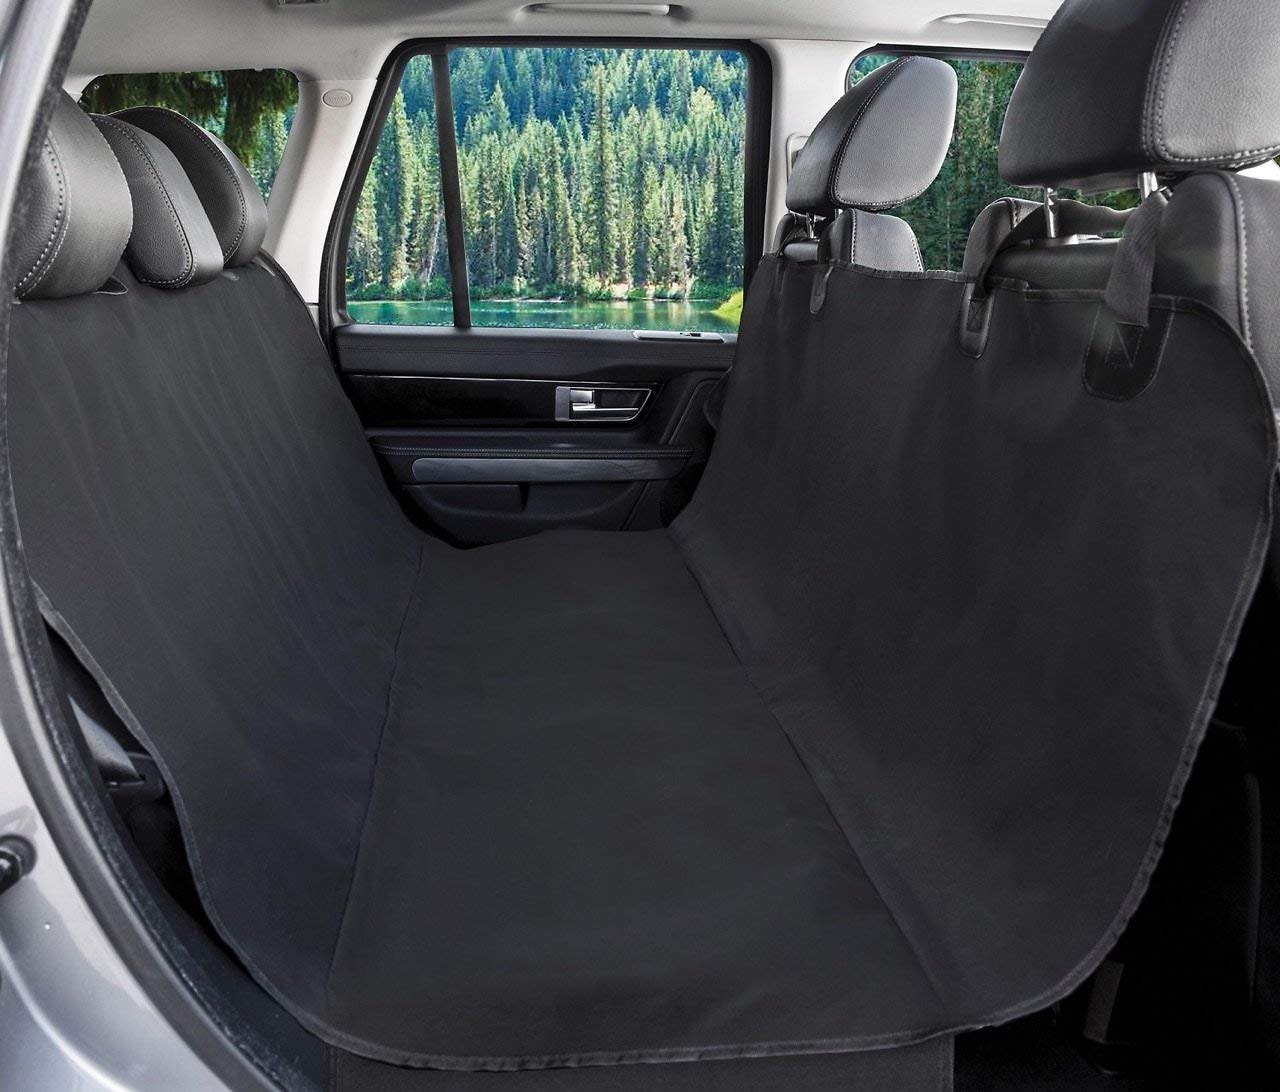 BarksBar Original Waterproof Car Seat Cover